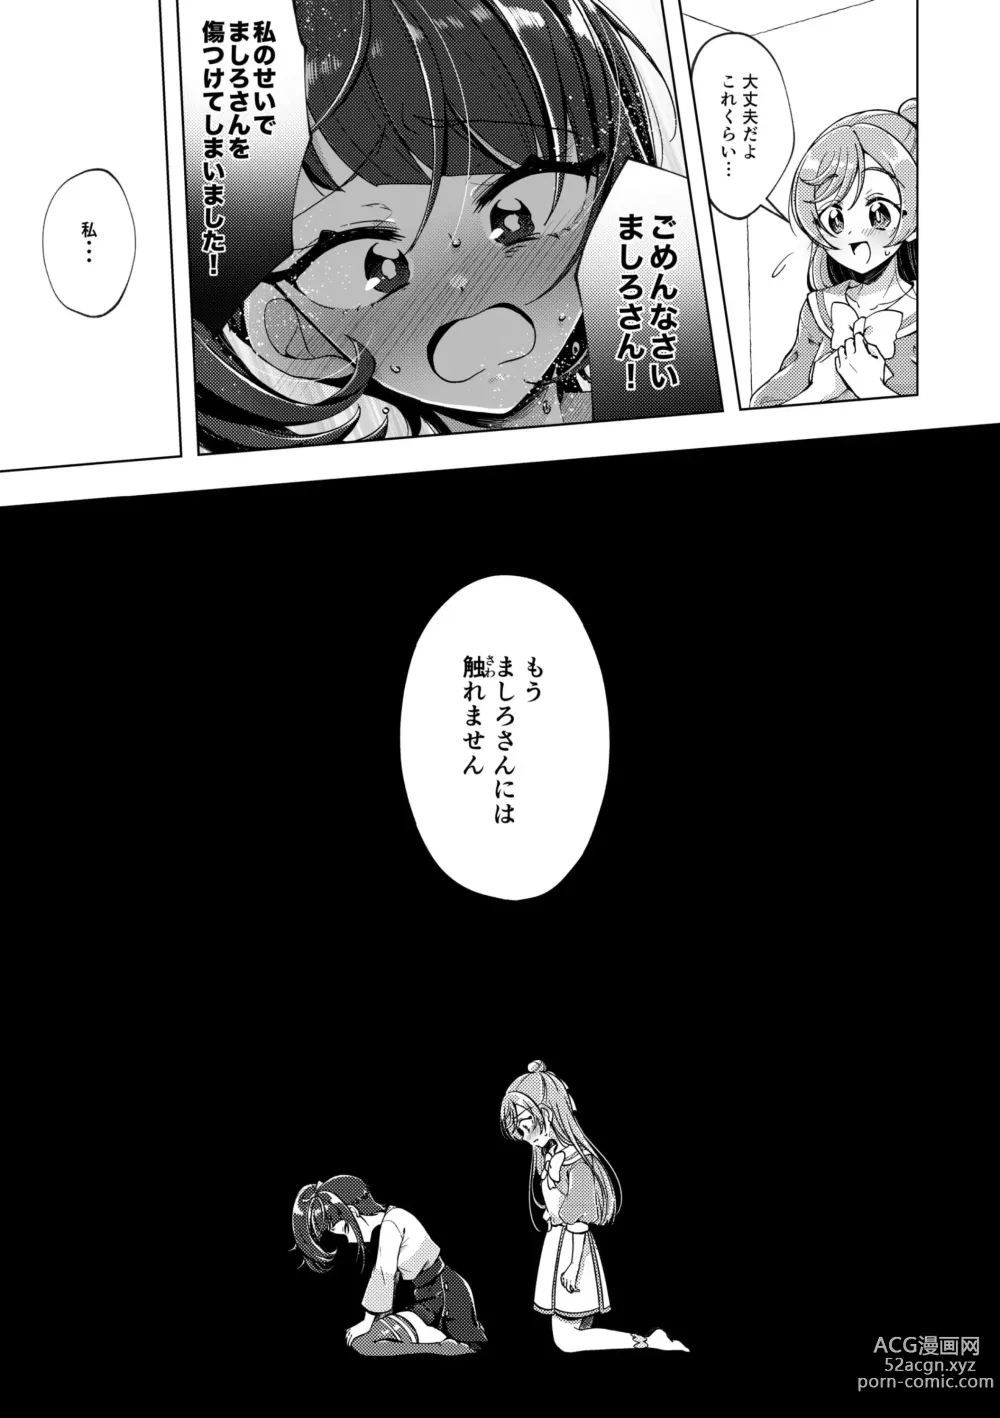 Page 12 of doujinshi Zankou no Sora